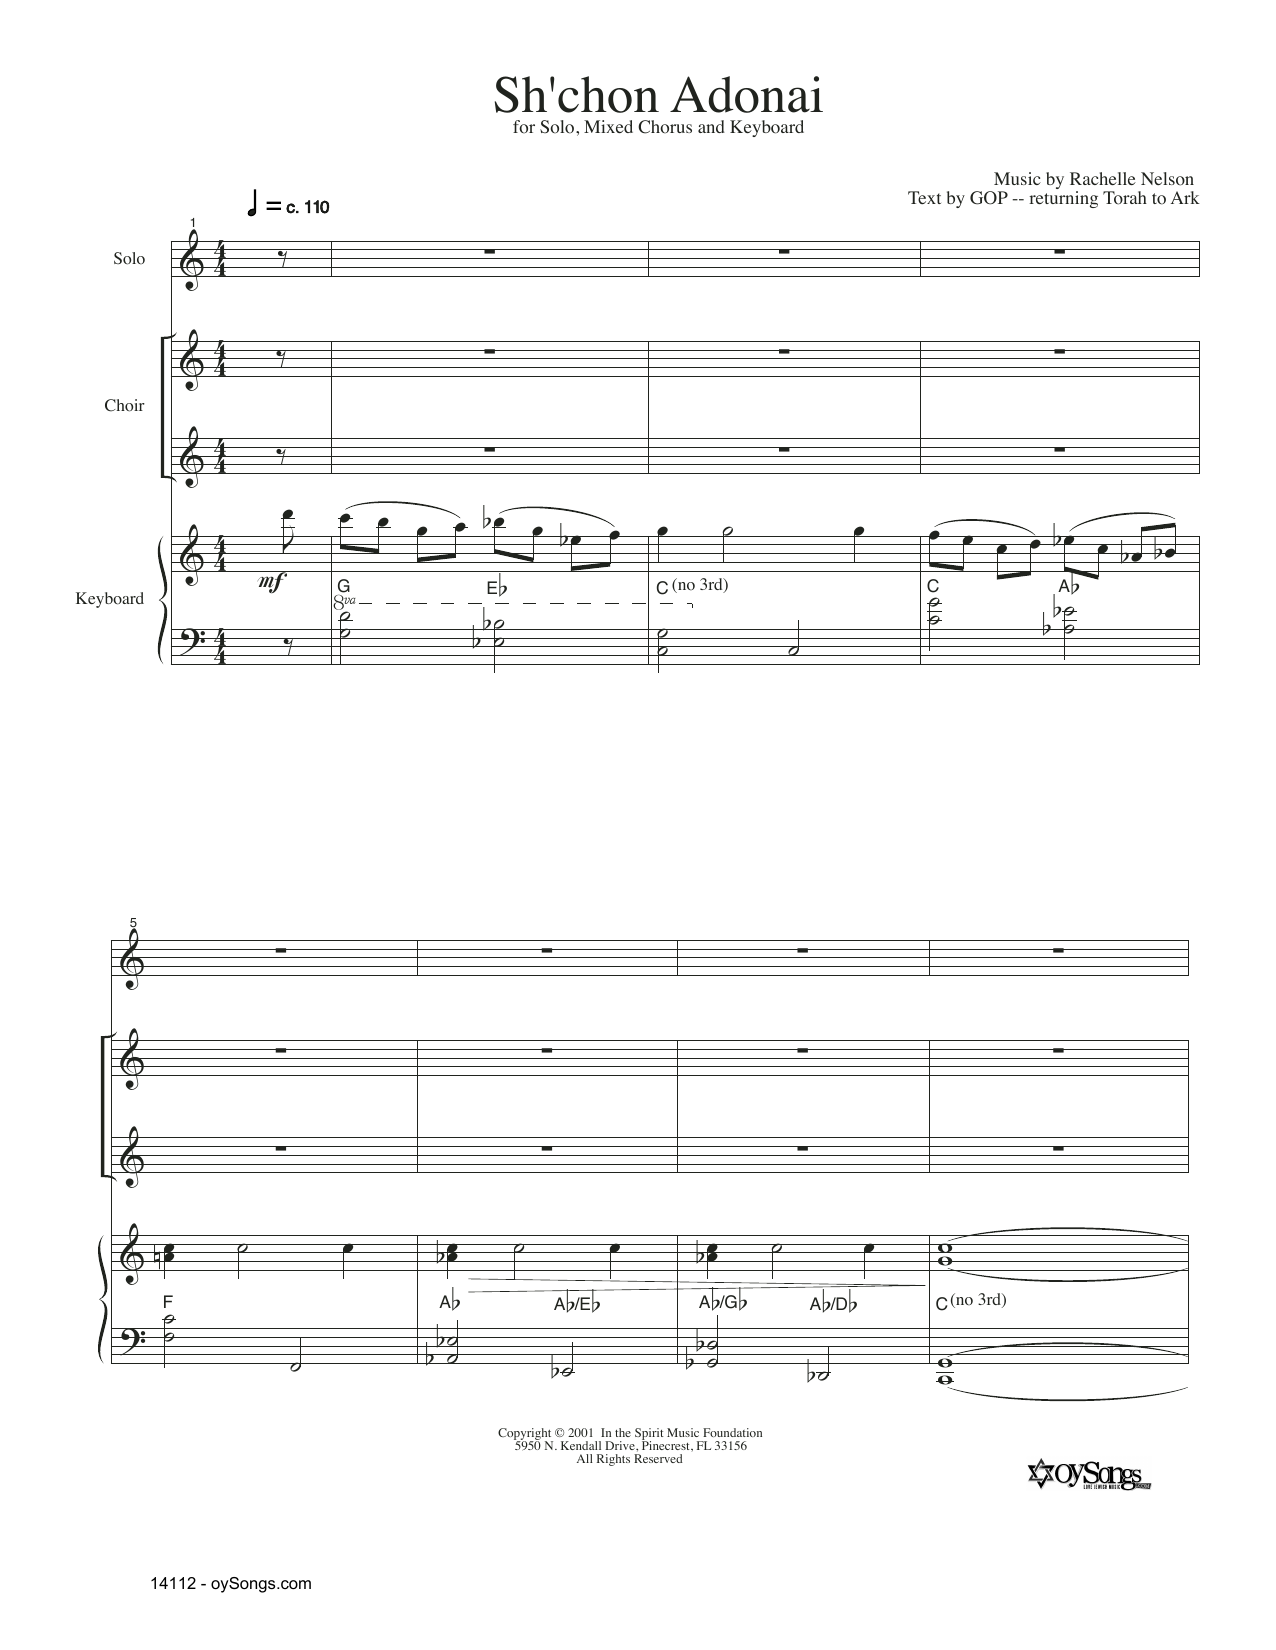 Rachelle Nelson Sh'Chon Adonai Sheet Music Notes & Chords for SATB Choir - Download or Print PDF